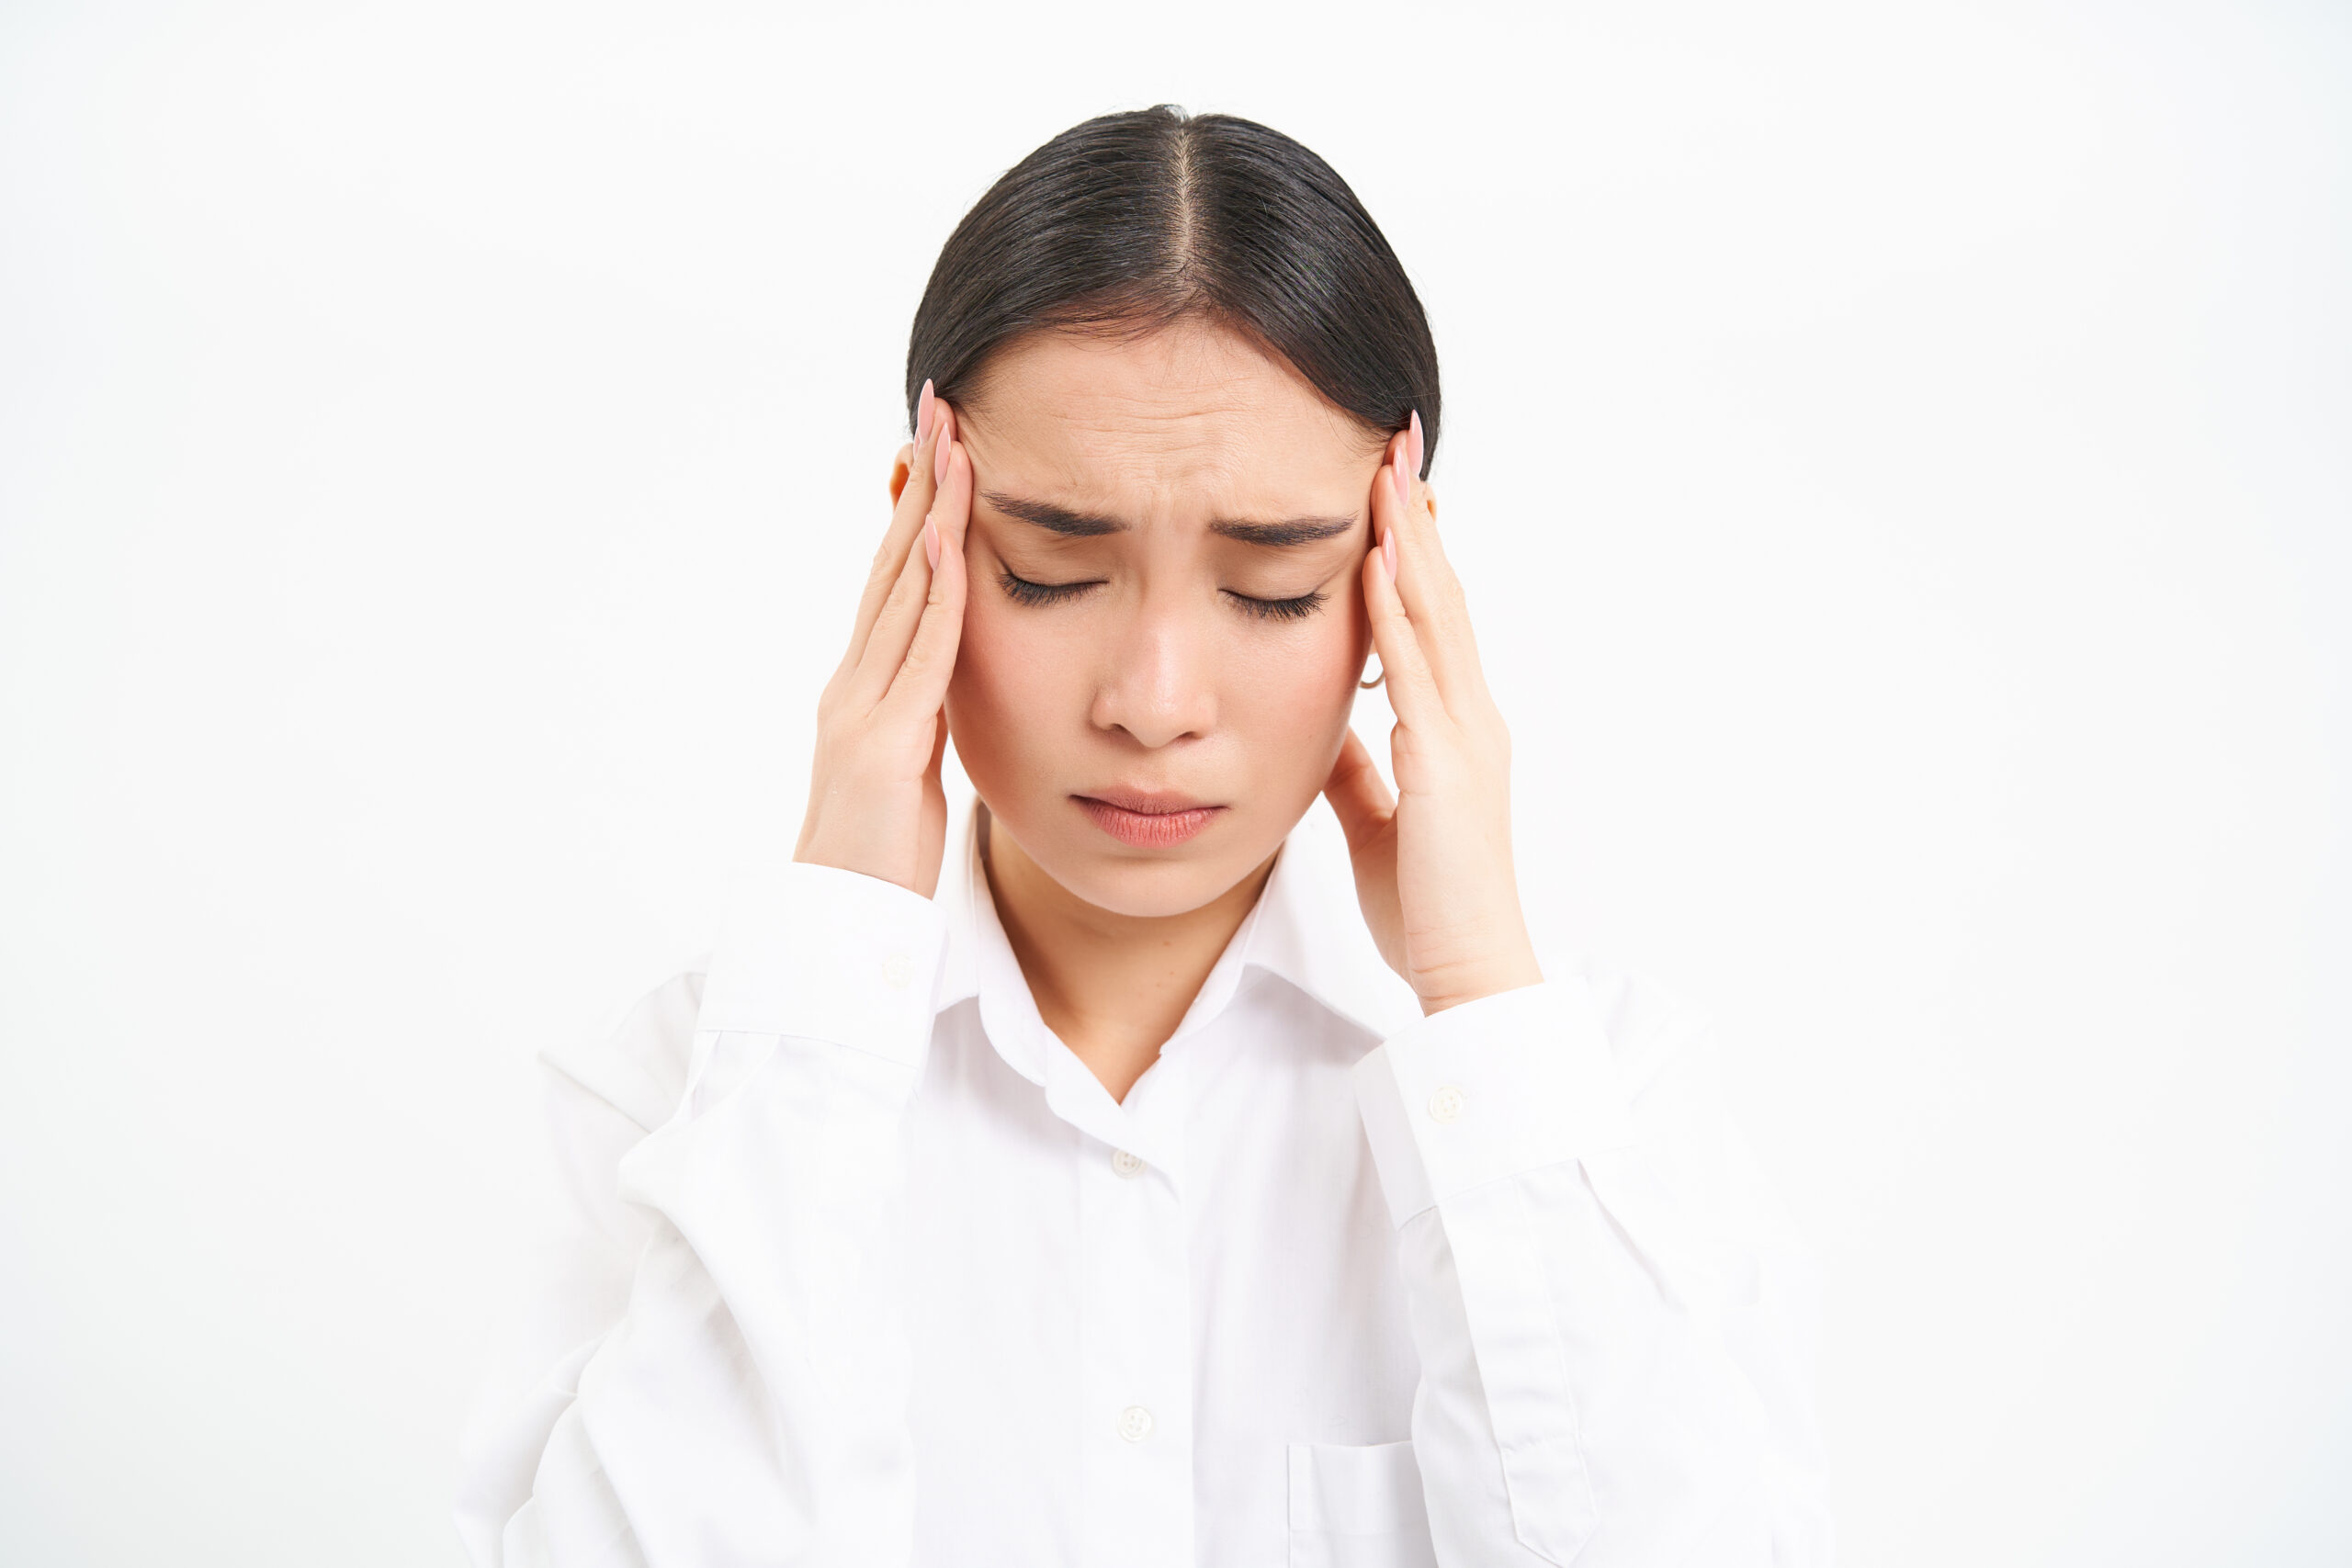 What are Migraine Symptoms